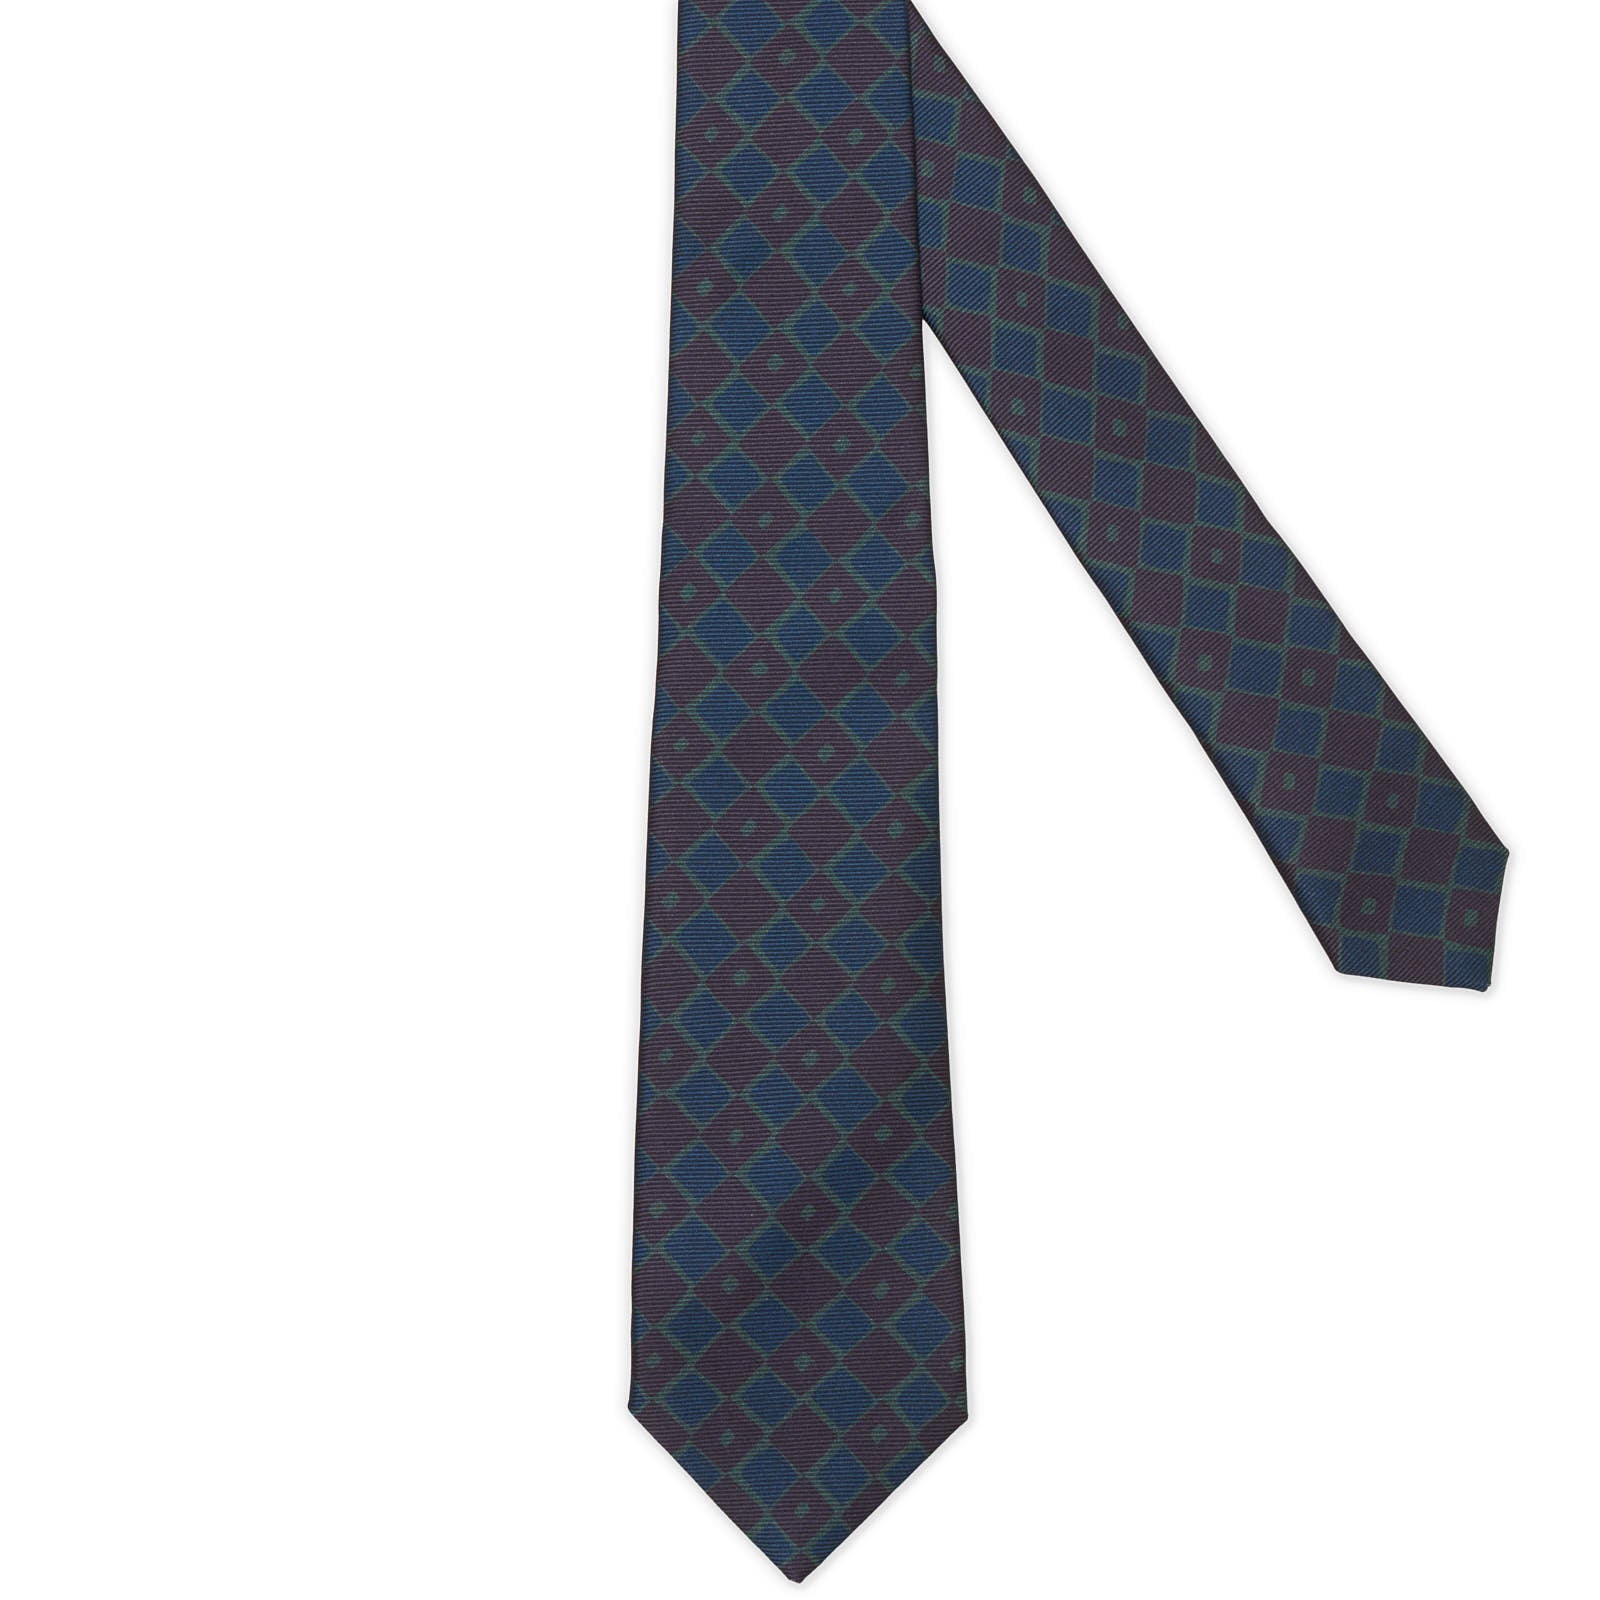 MATTABISCH FOR VANNUCCI Blue-Drak Purple Geometric Silk Tie NEW